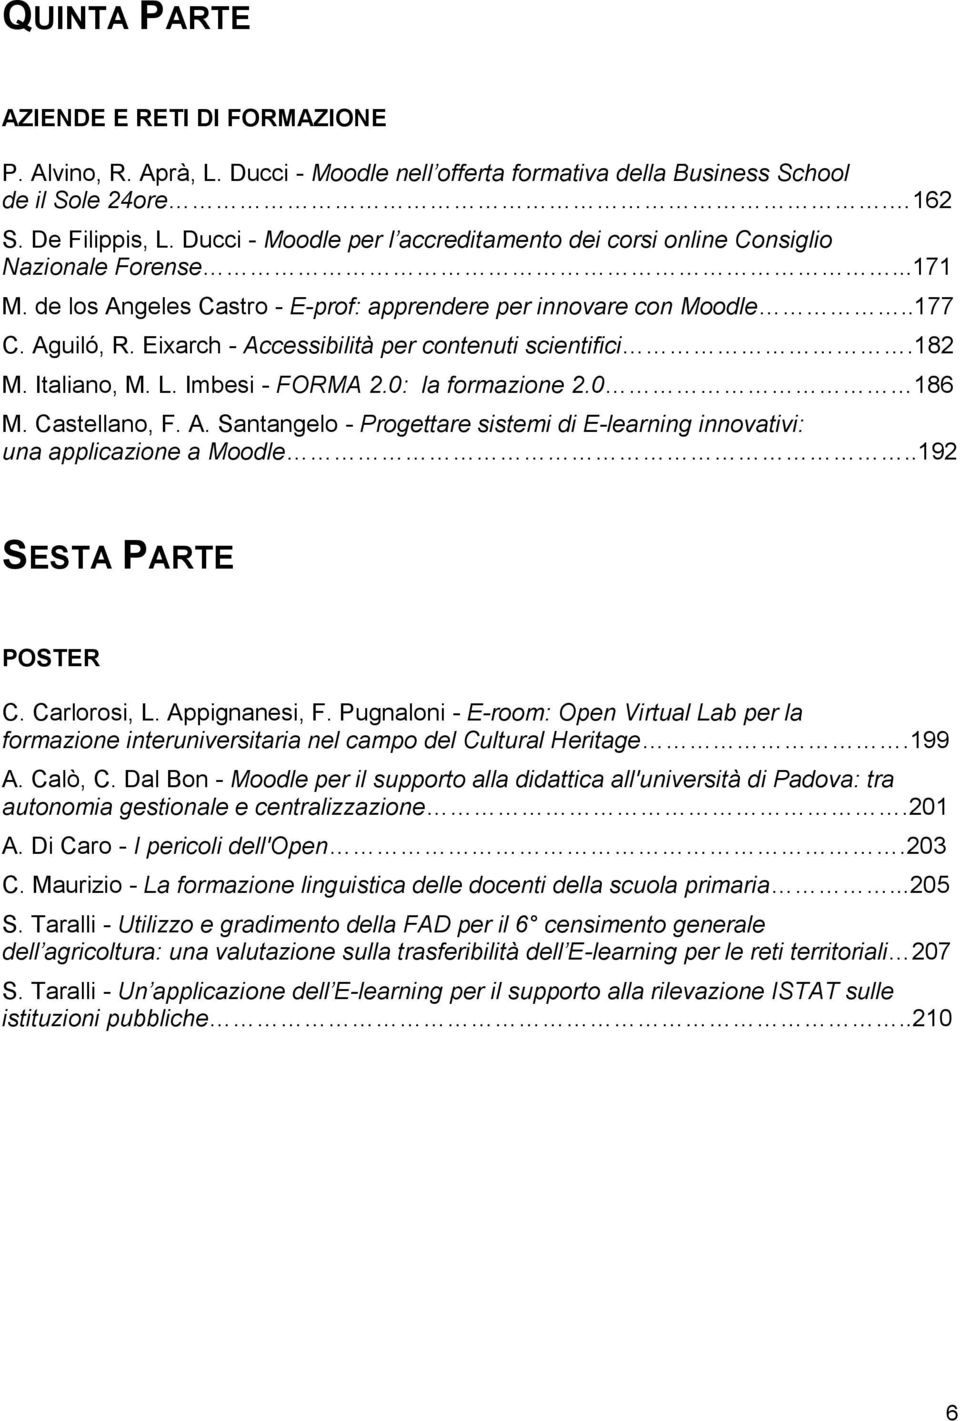 Eixarch - Accessibilità per contenuti scientifici.182 M. Italiano, M. L. Imbesi - FORMA 2.0: la formazione 2.0 186 M. Castellano, F. A. Santangelo - Progettare sistemi di E-learning innovativi: una applicazione a Moodle.